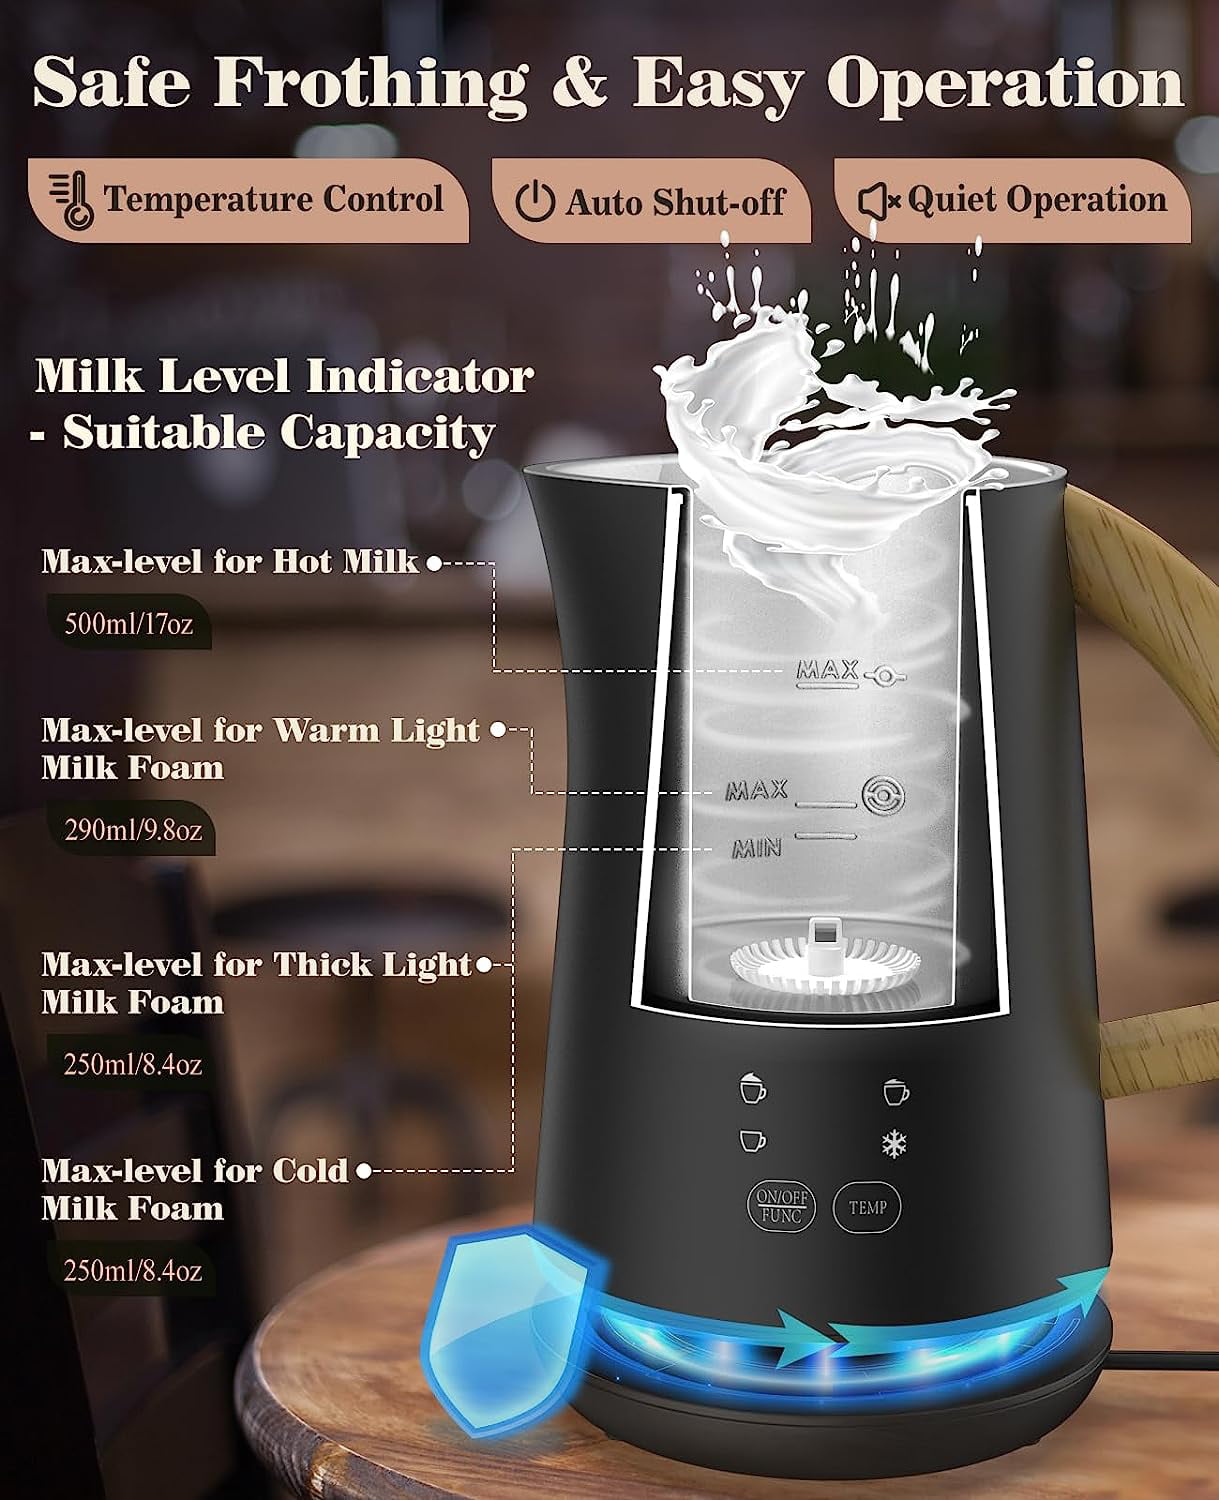 Instant Pot 4-in-1 Milk Frother/Steamer, Black - Refurbished